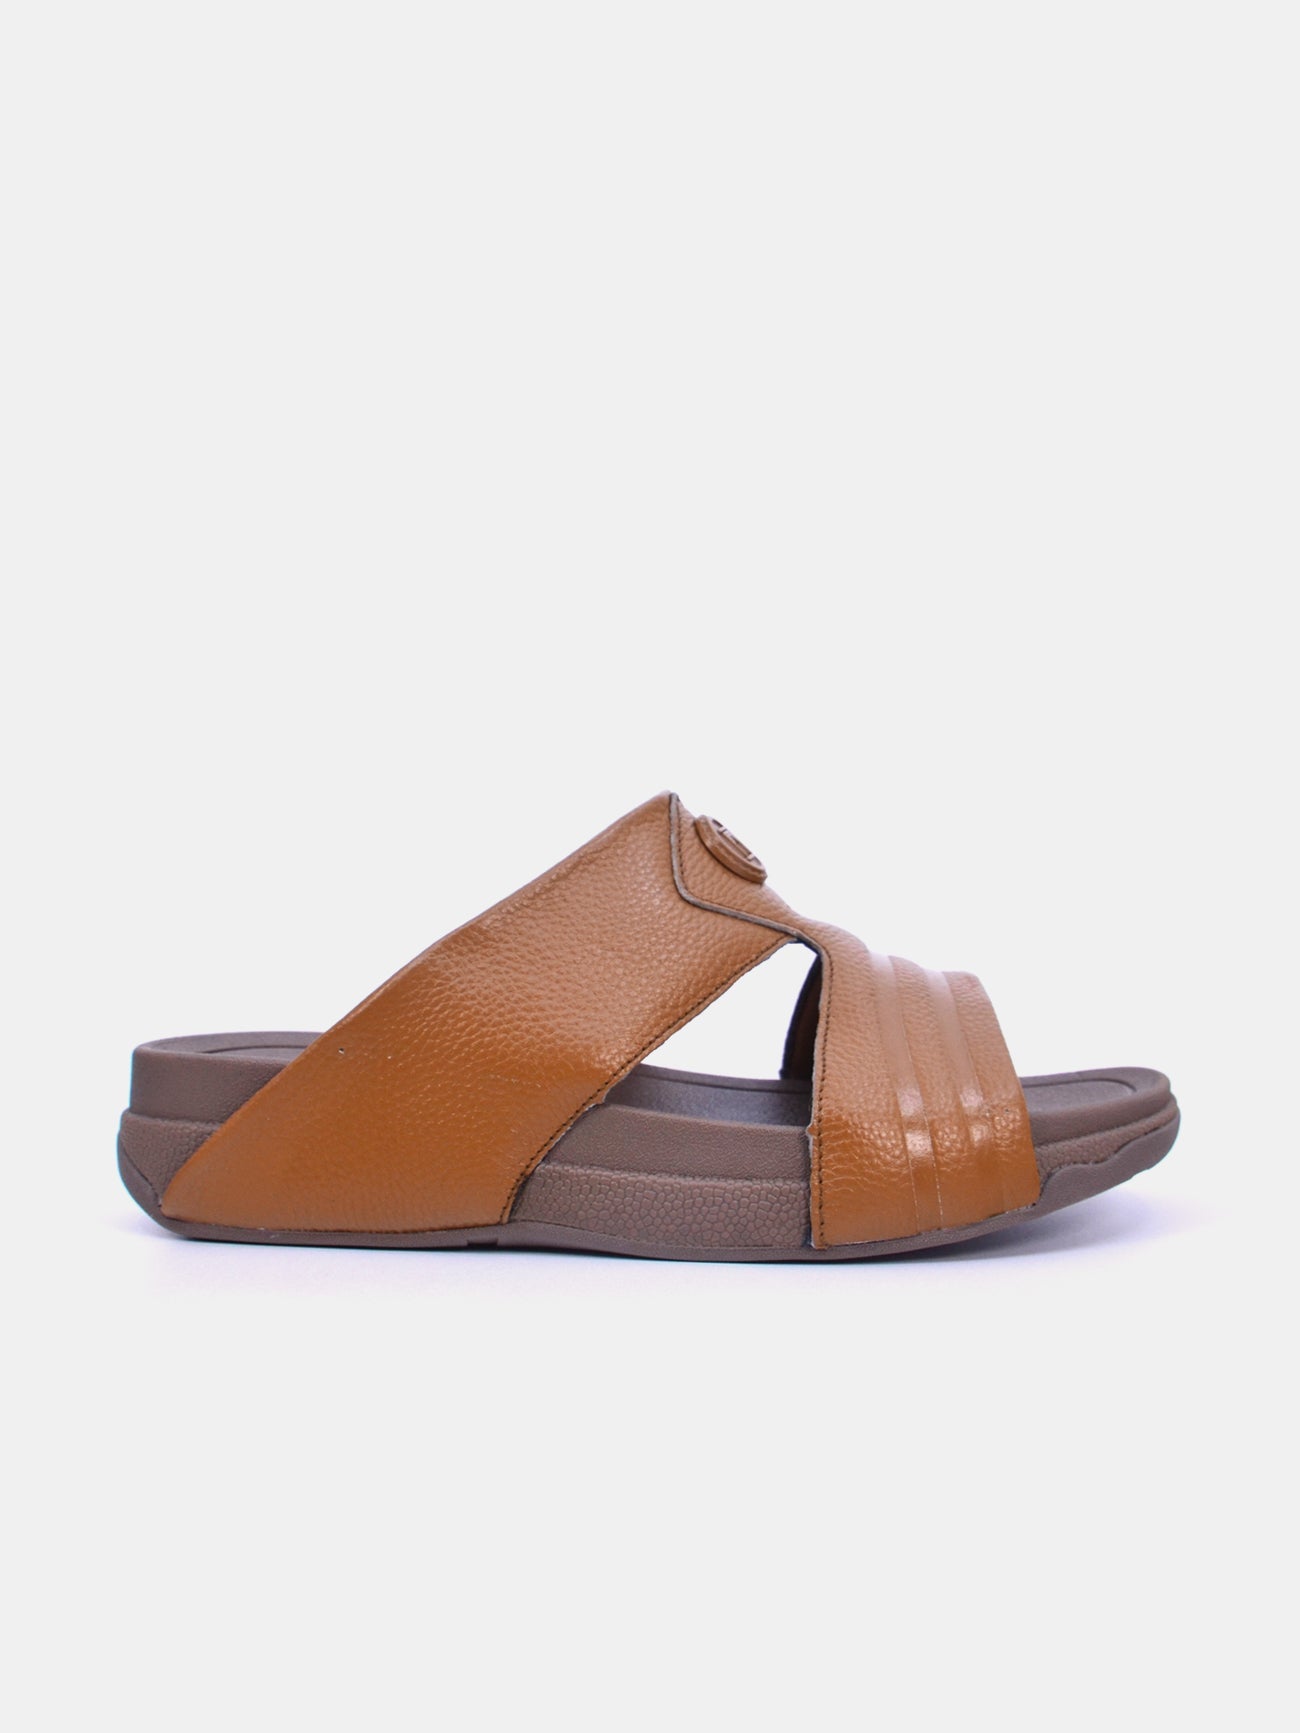 Barjeel Uno 20249 Men's Arabic Sandals #color_Tan